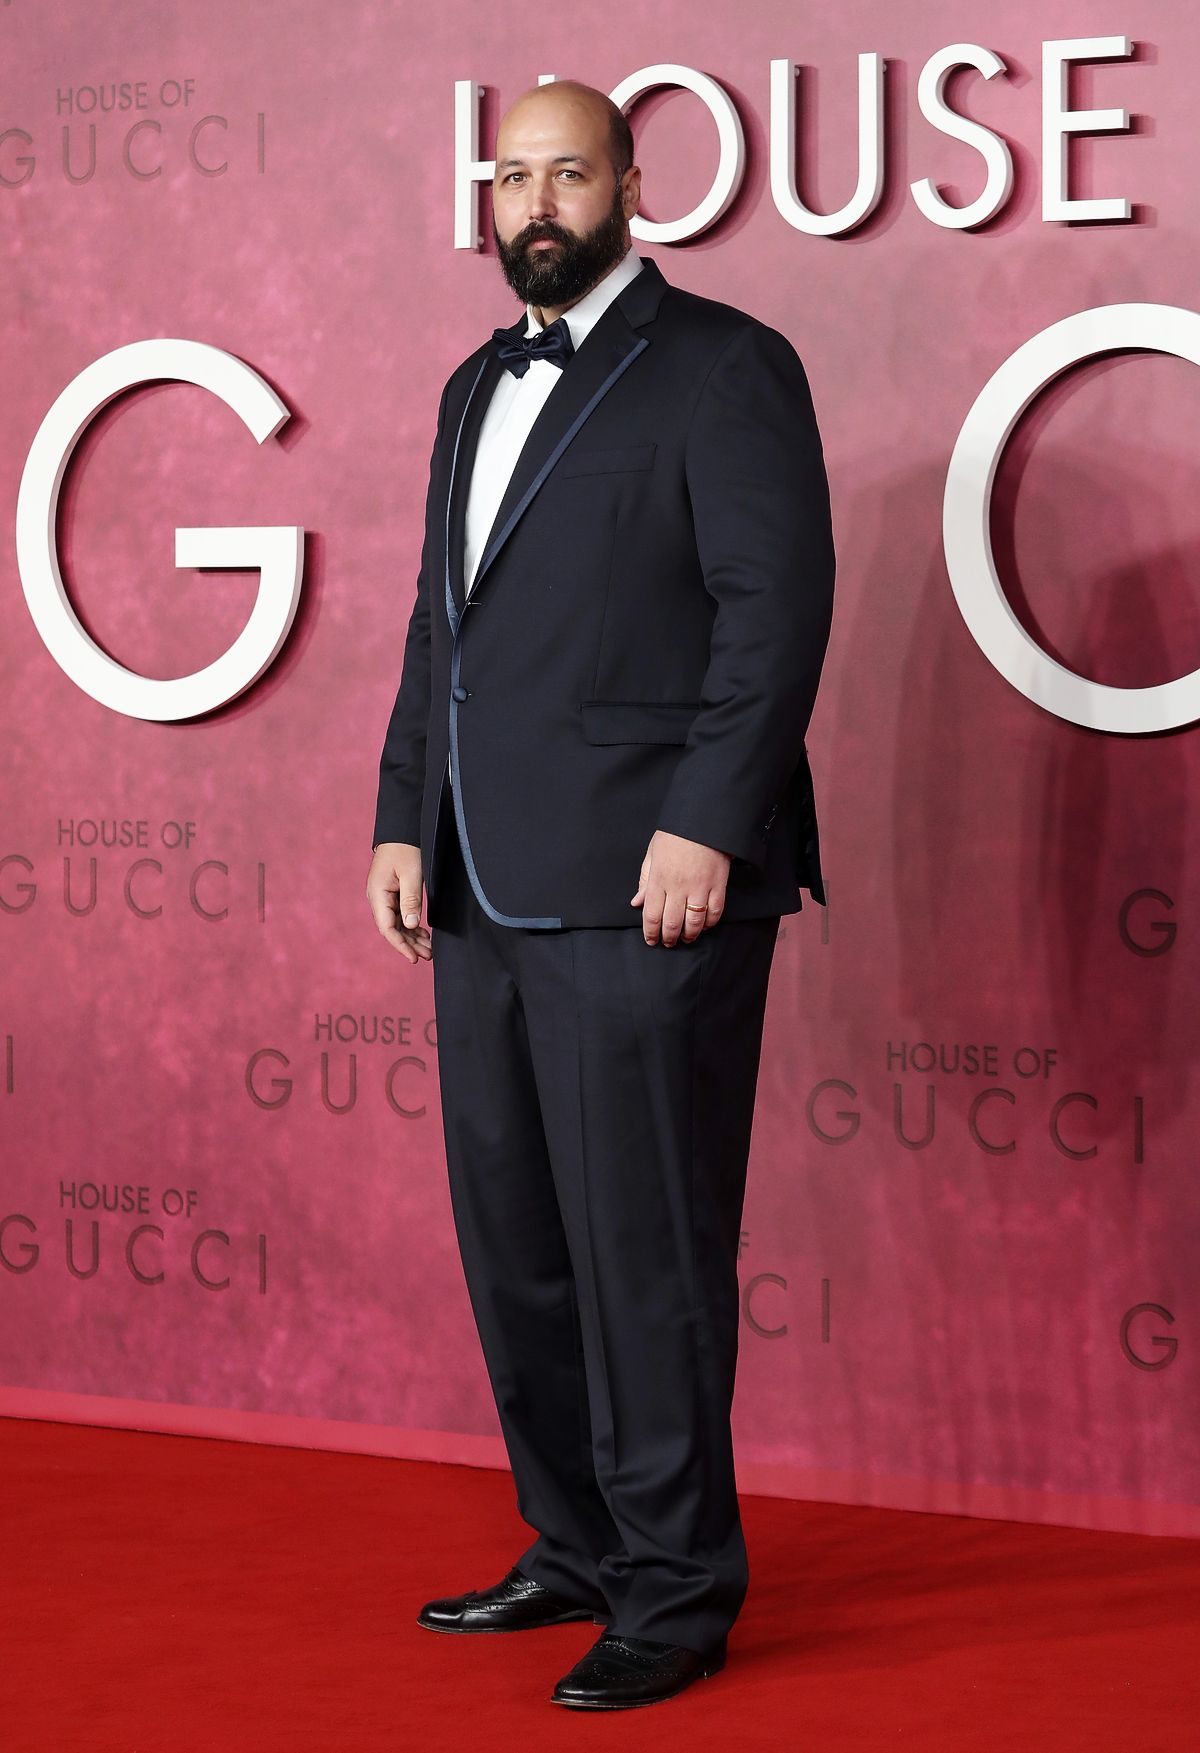 Юссеф Керкур на премьере фильма «Дом Gucci» в Лондоне